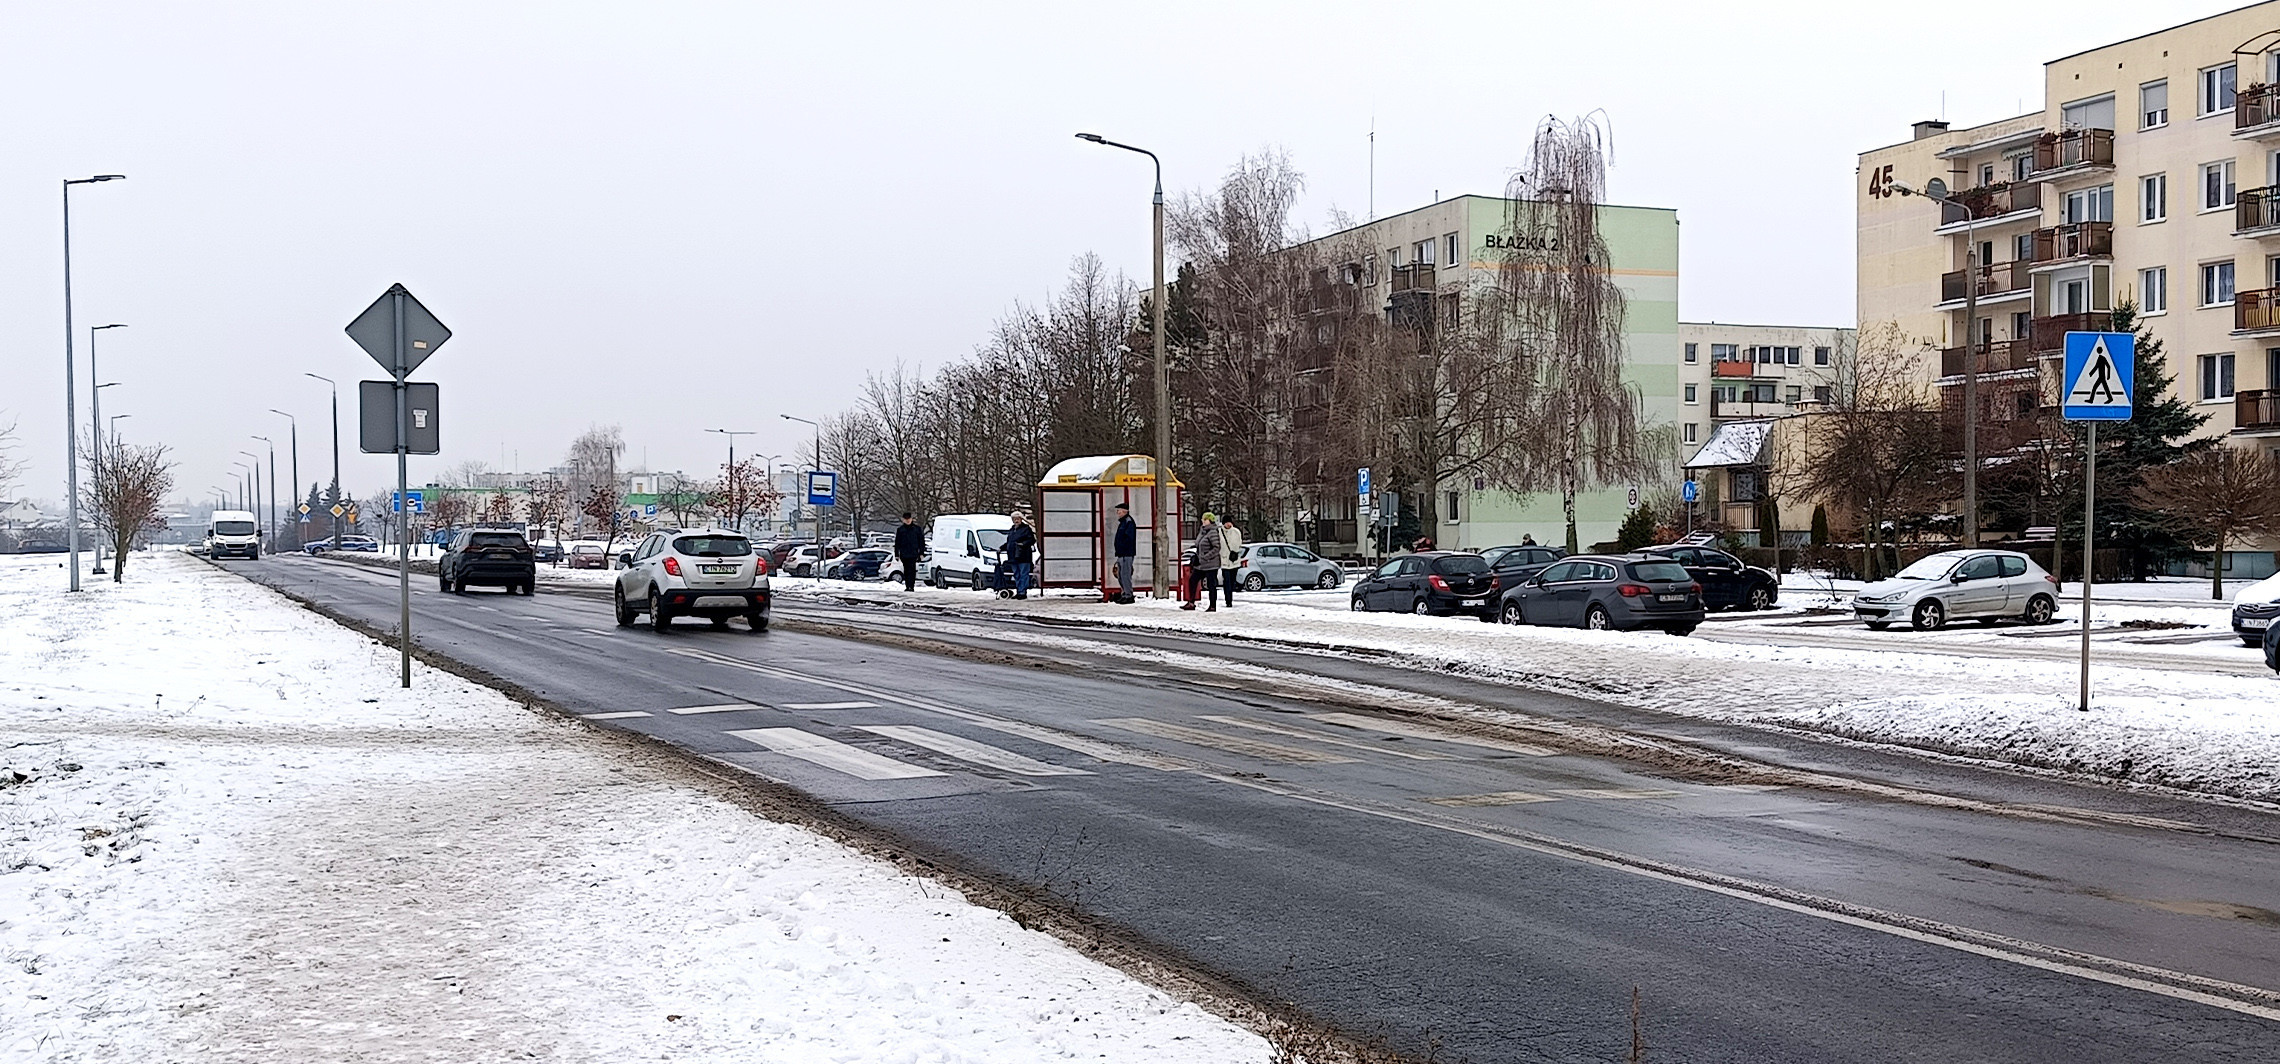 Inowrocław - Zmiany dla pieszych na Rąbinie. Ma być bezpieczniej